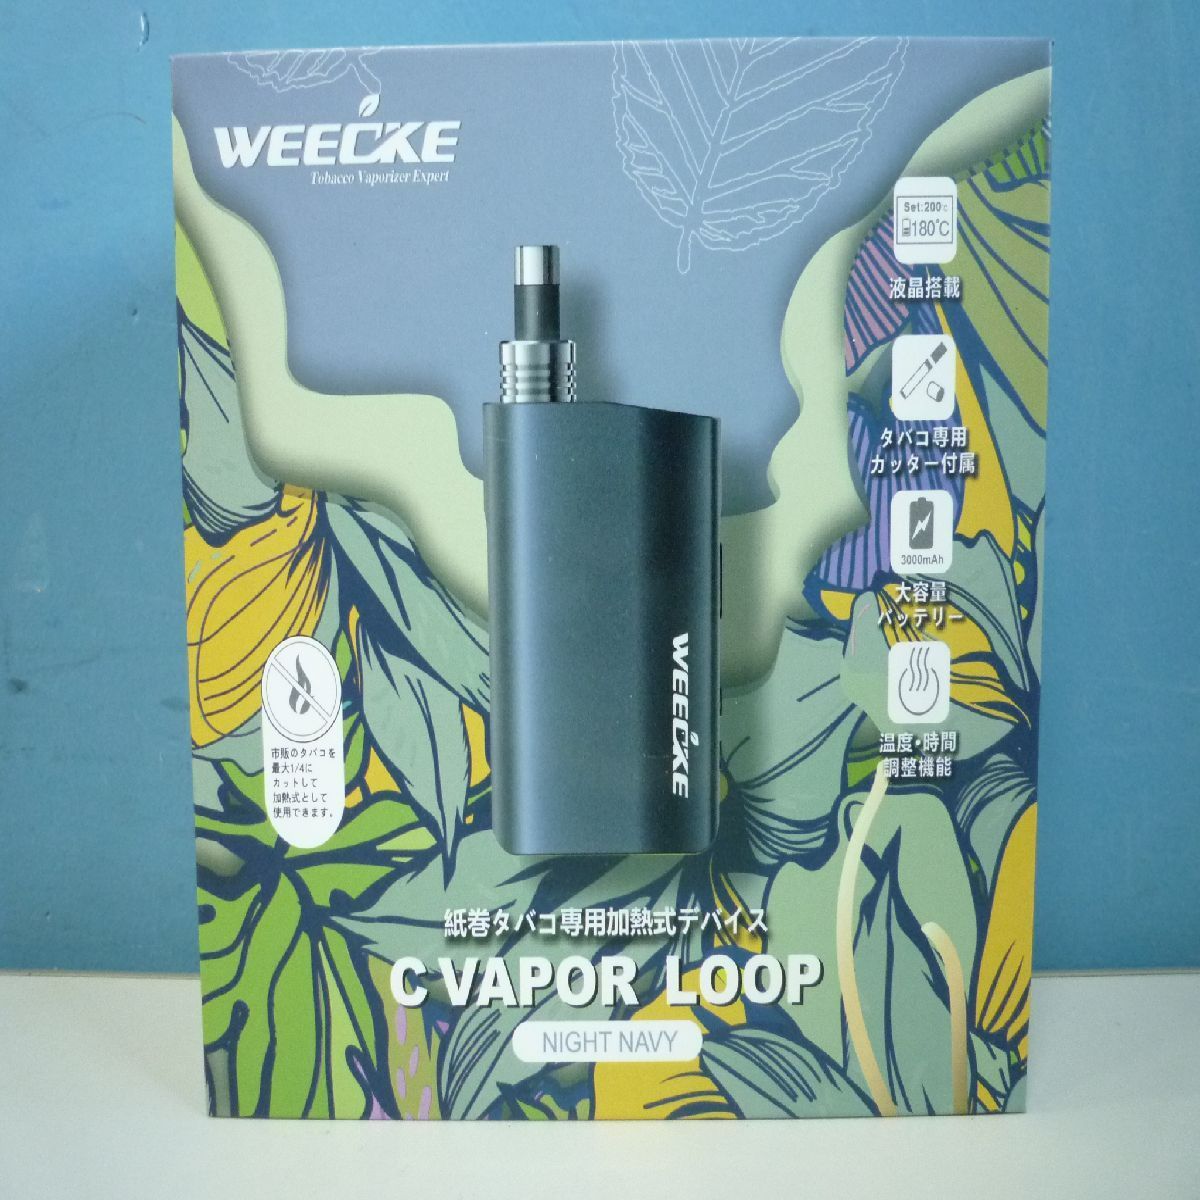 weecke c vapor loop 加熱式タバコ ヴェポライザー - タバコグッズ